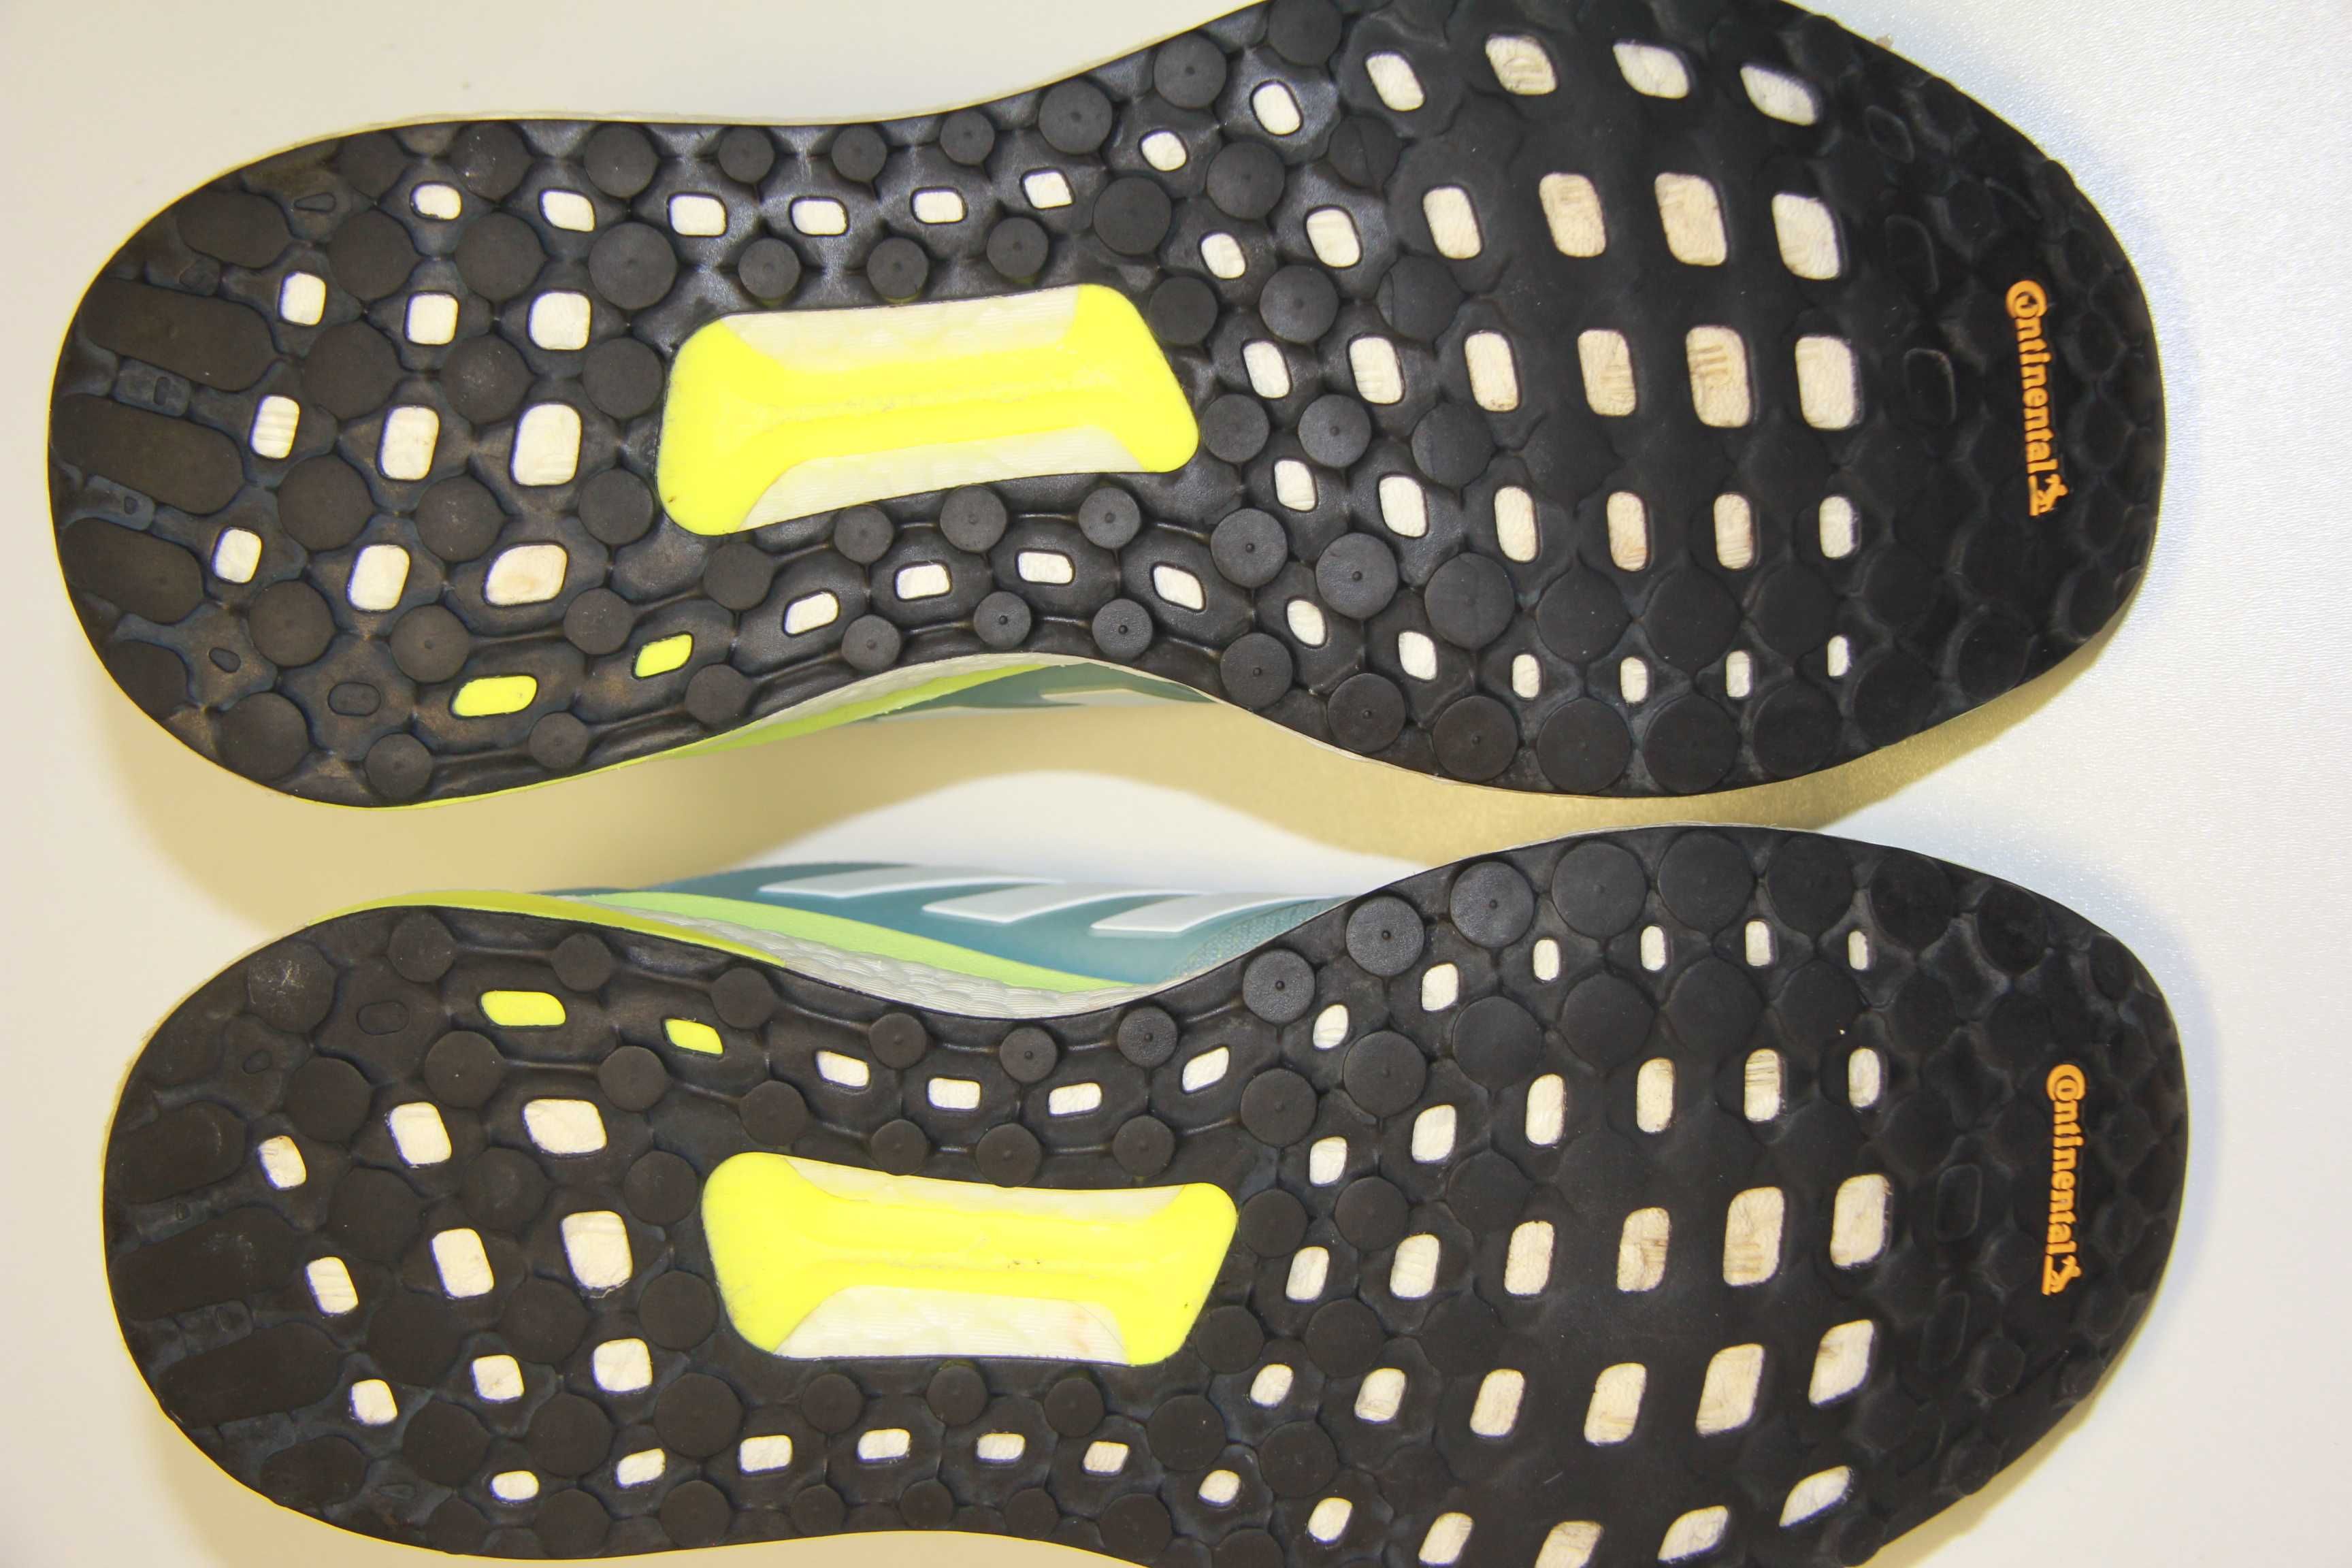 Кроссовки для бега "adidas SOLAR GLIDE" размер 41-27см.